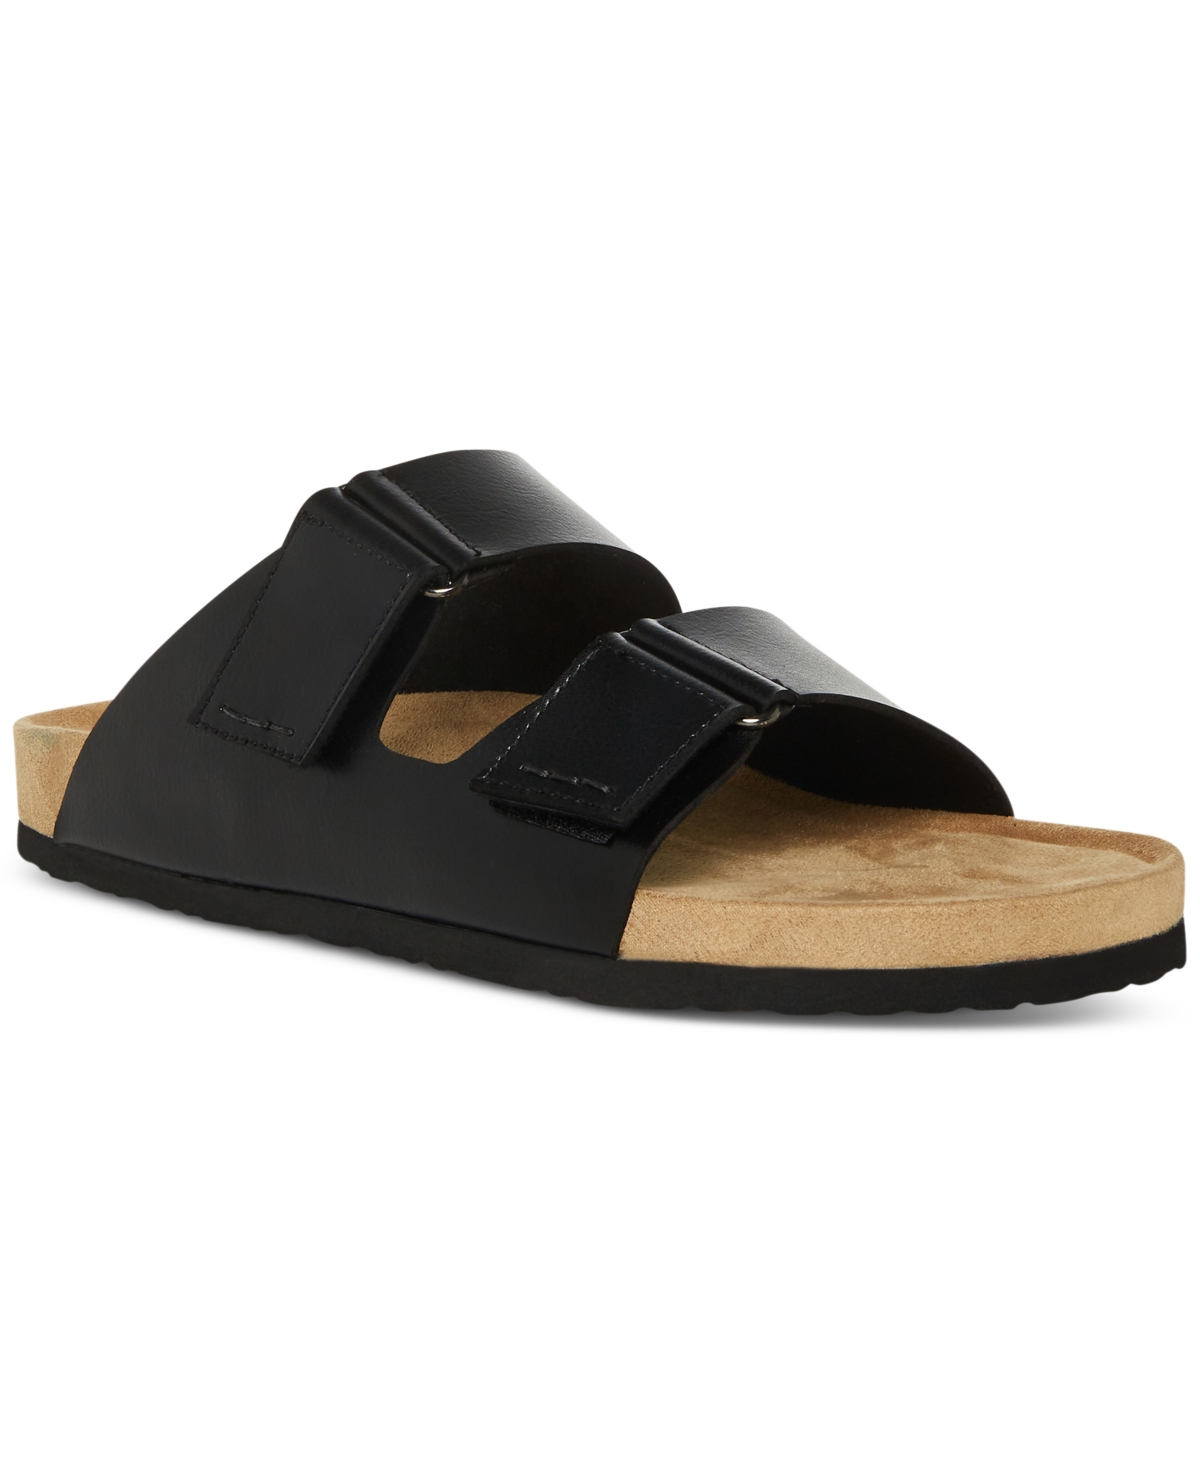 Men's Tisson Double Strap Sandals - Black